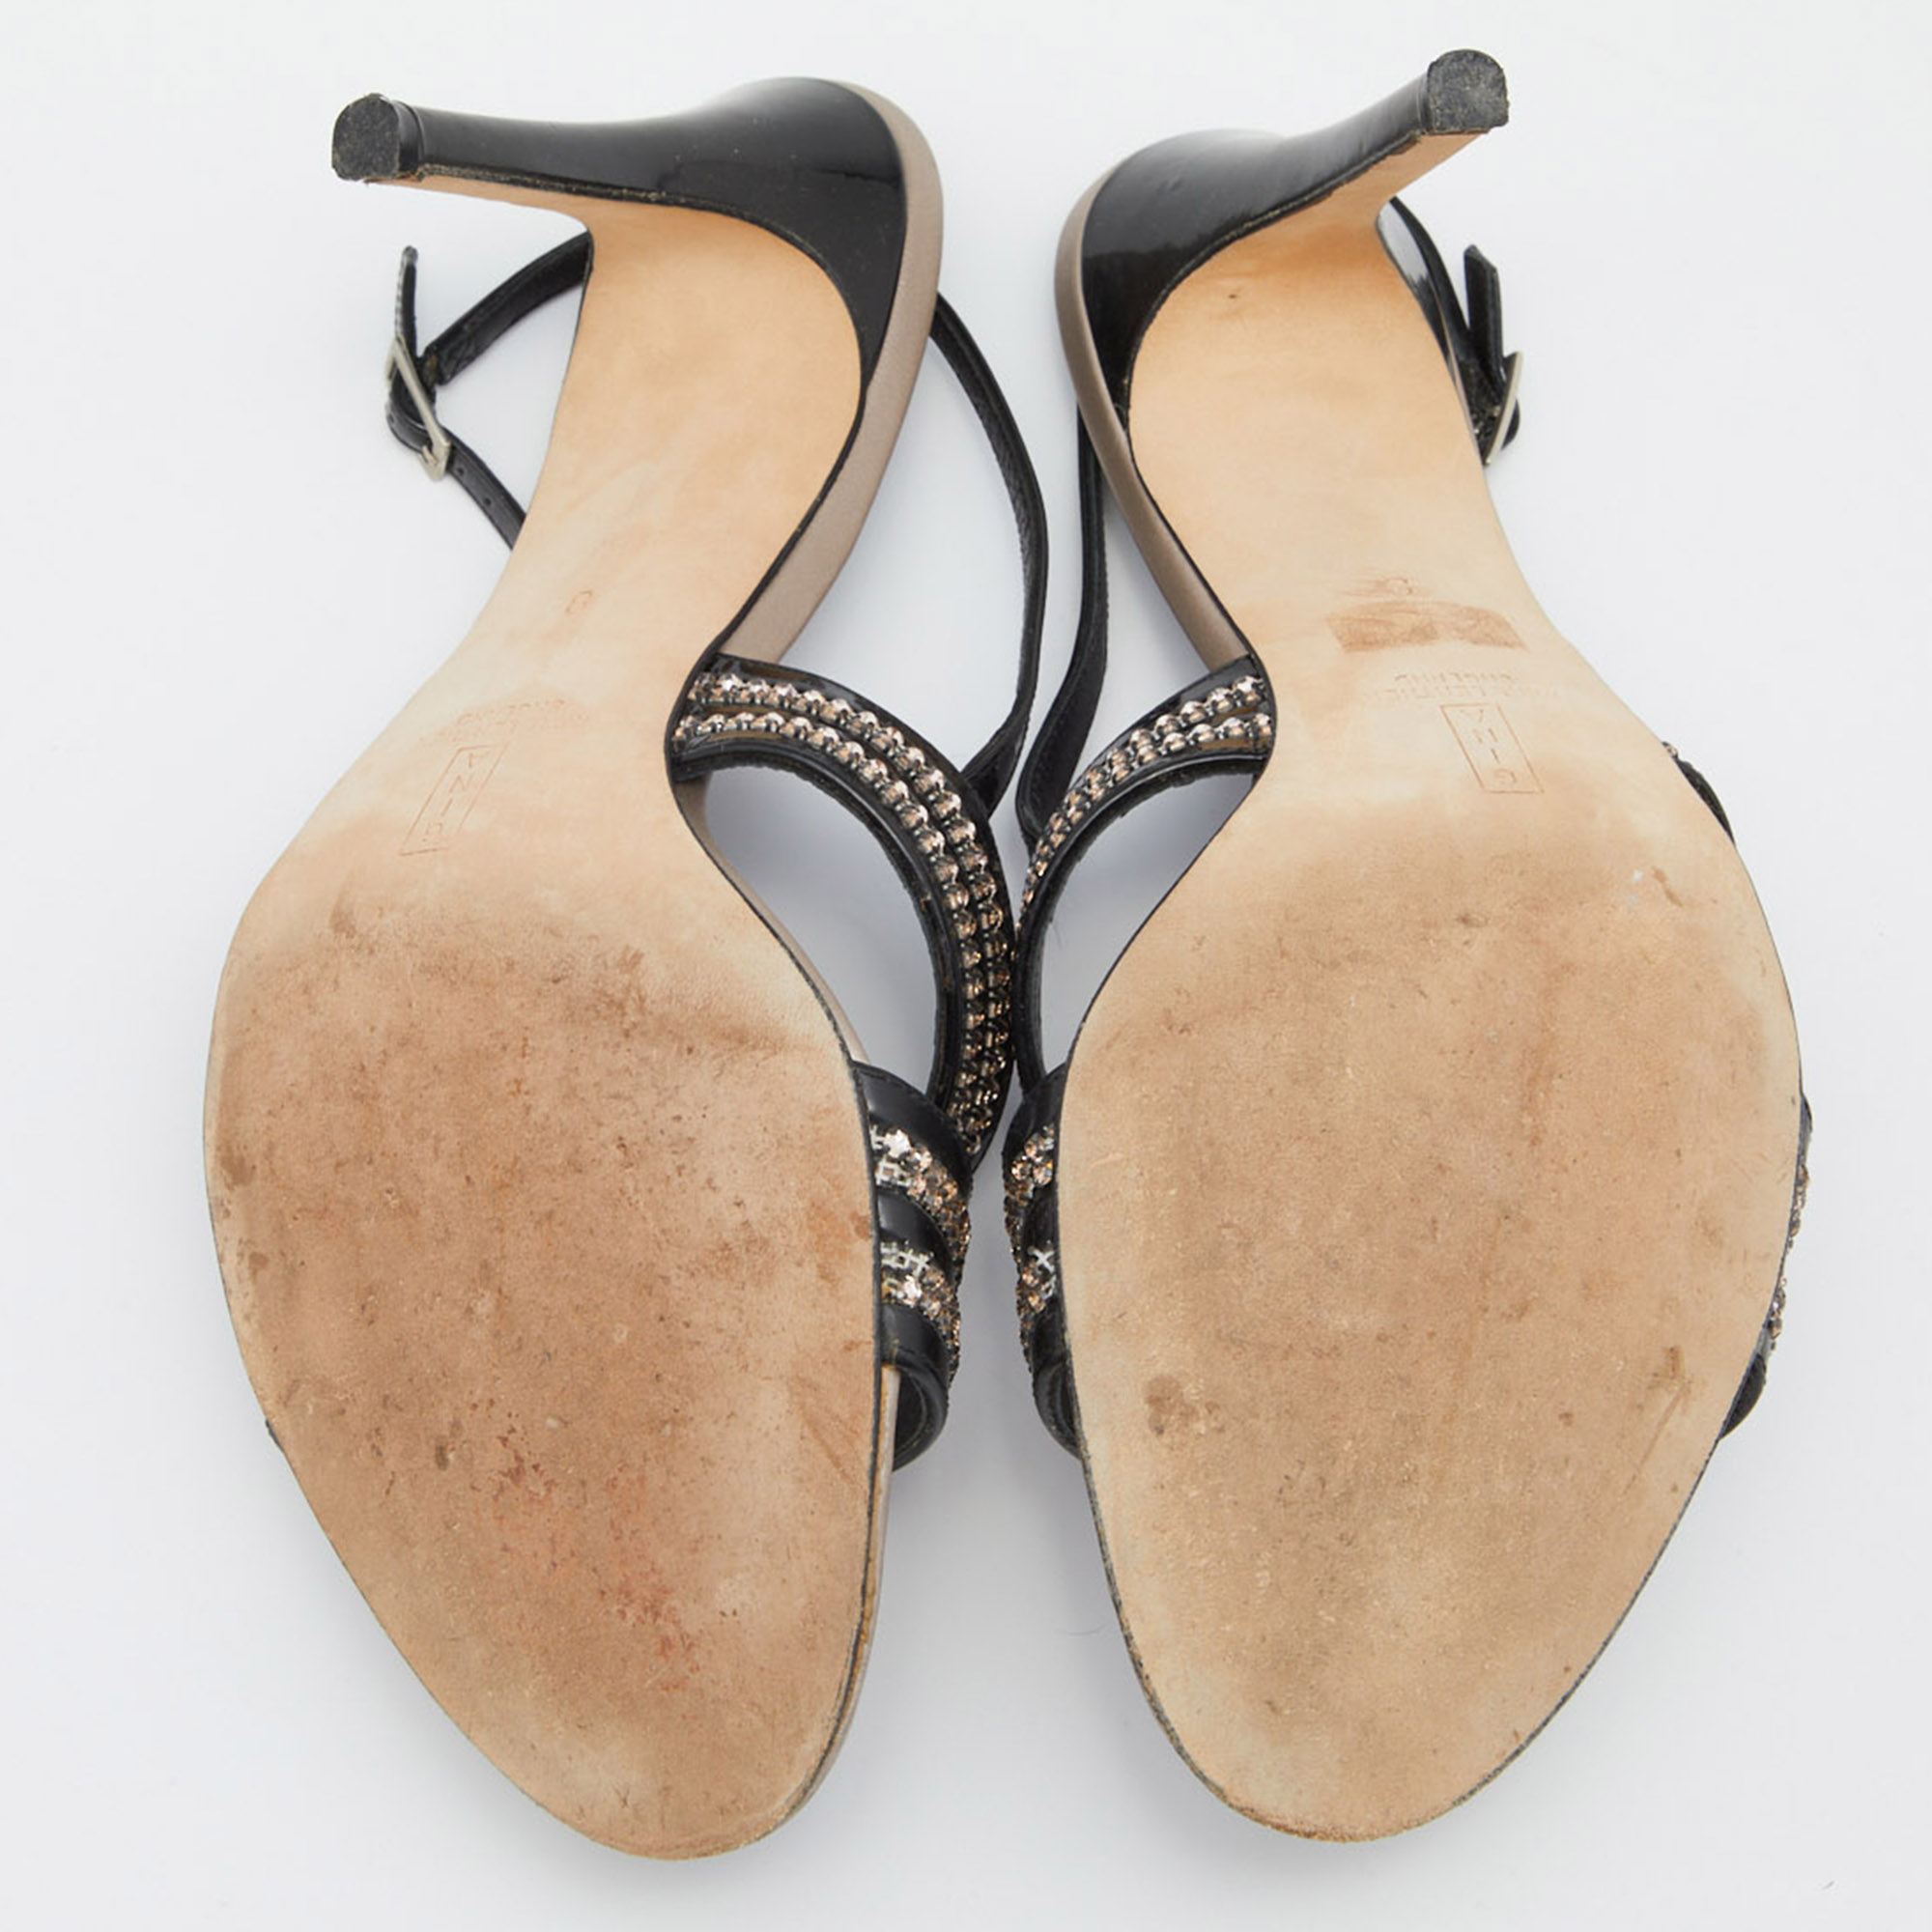 Gina Black Patent Leather Crystal Embellished Slingback Sandals Size 41